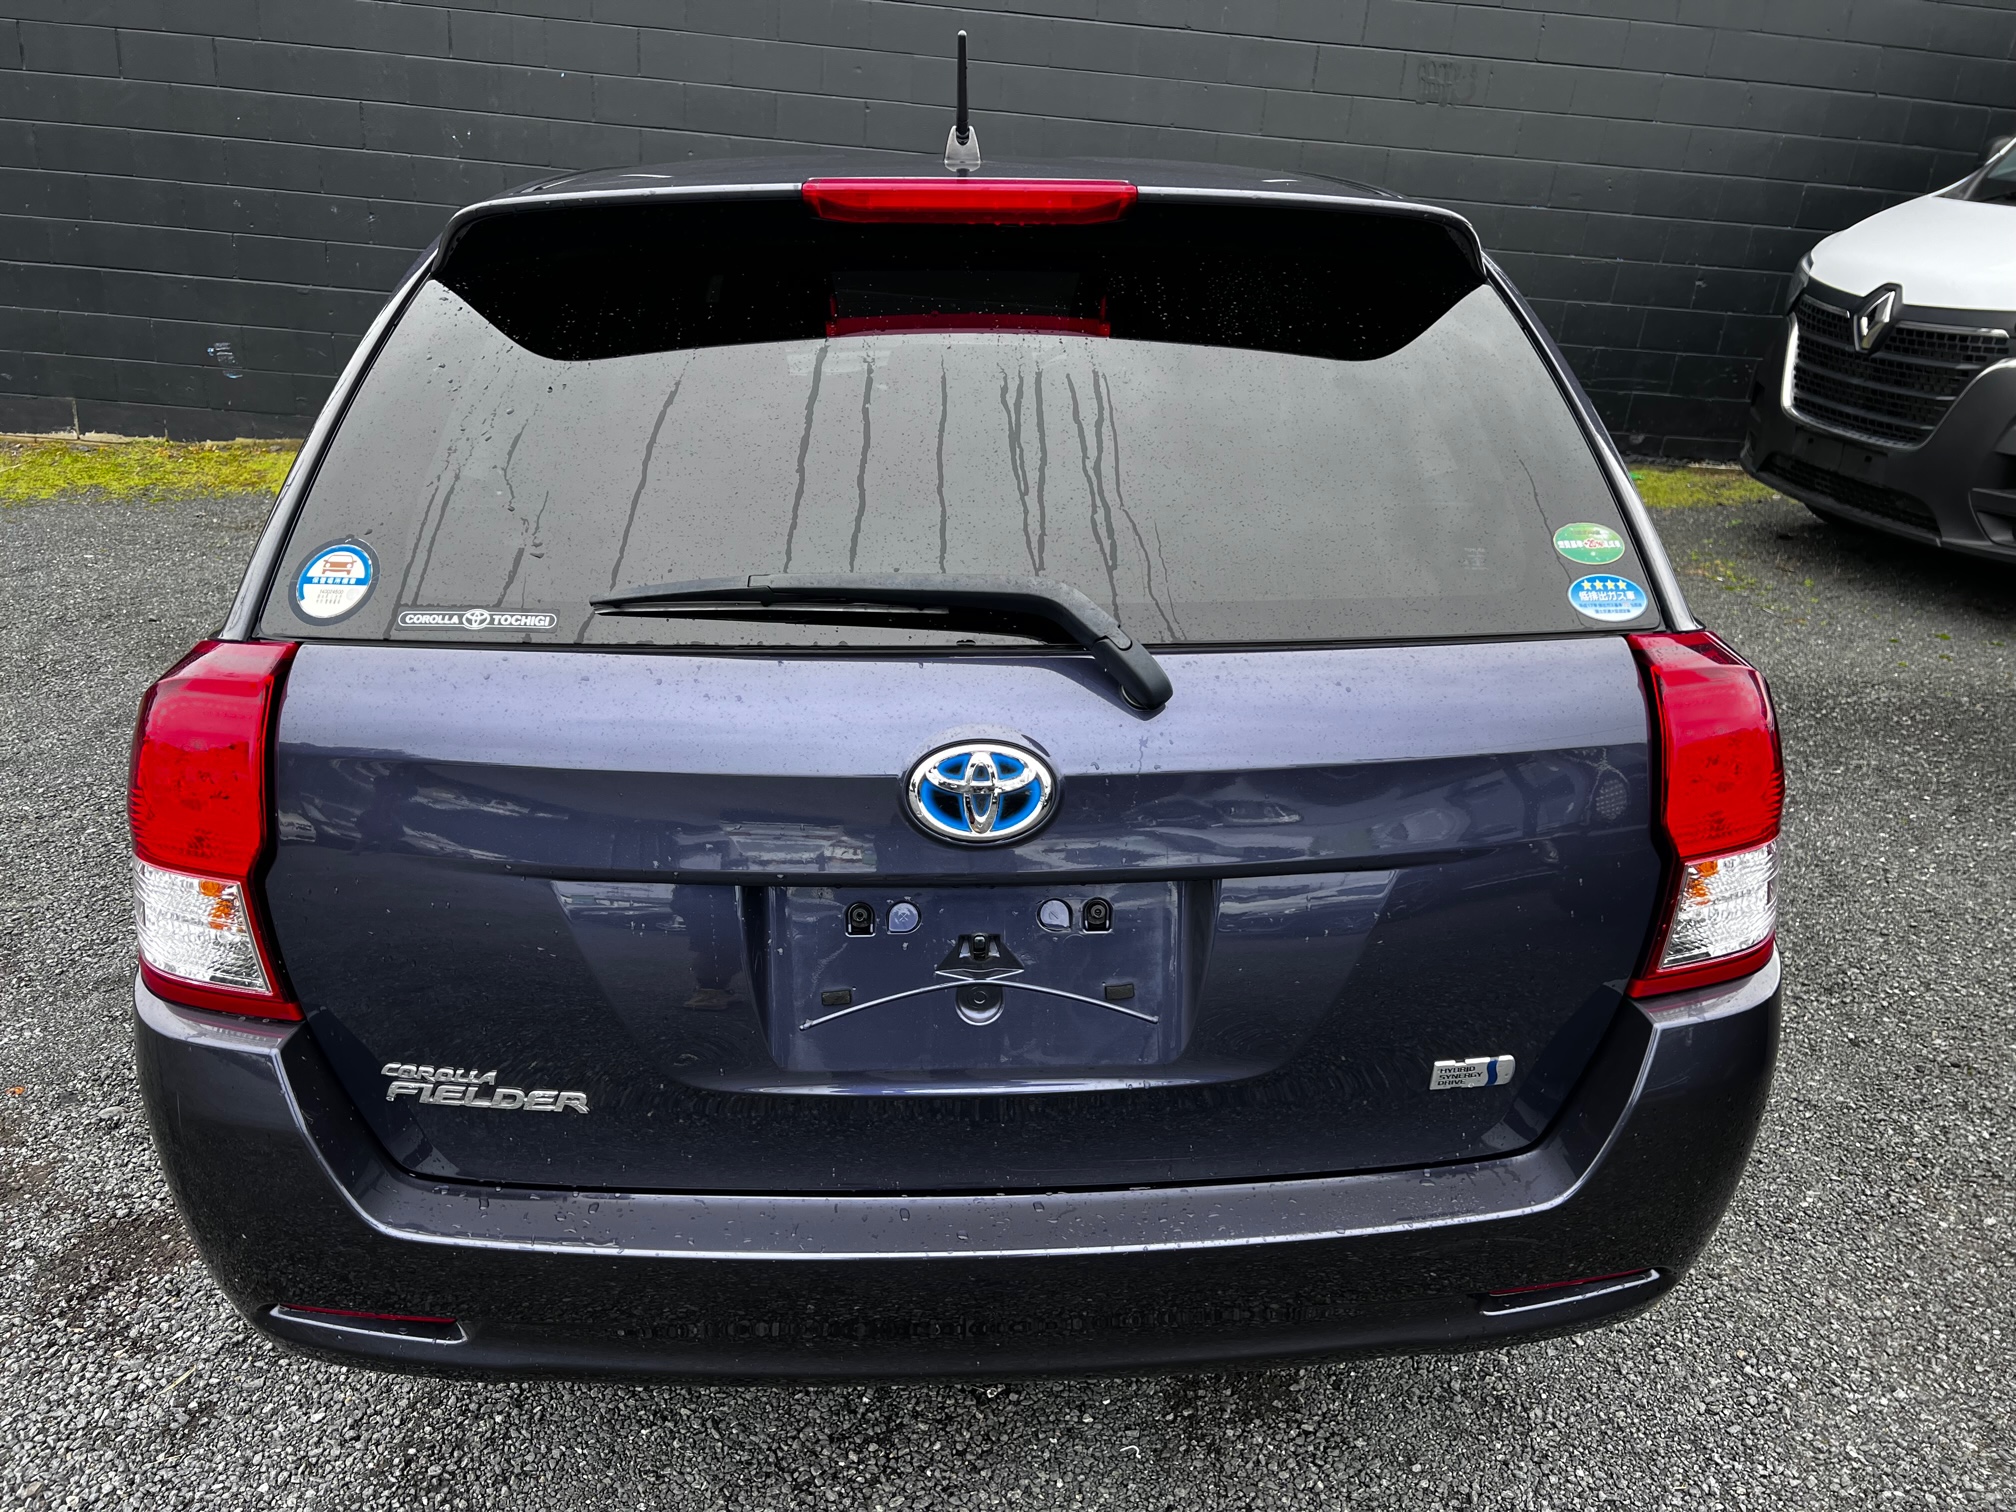 Toyota Fielder 2014 Image 4